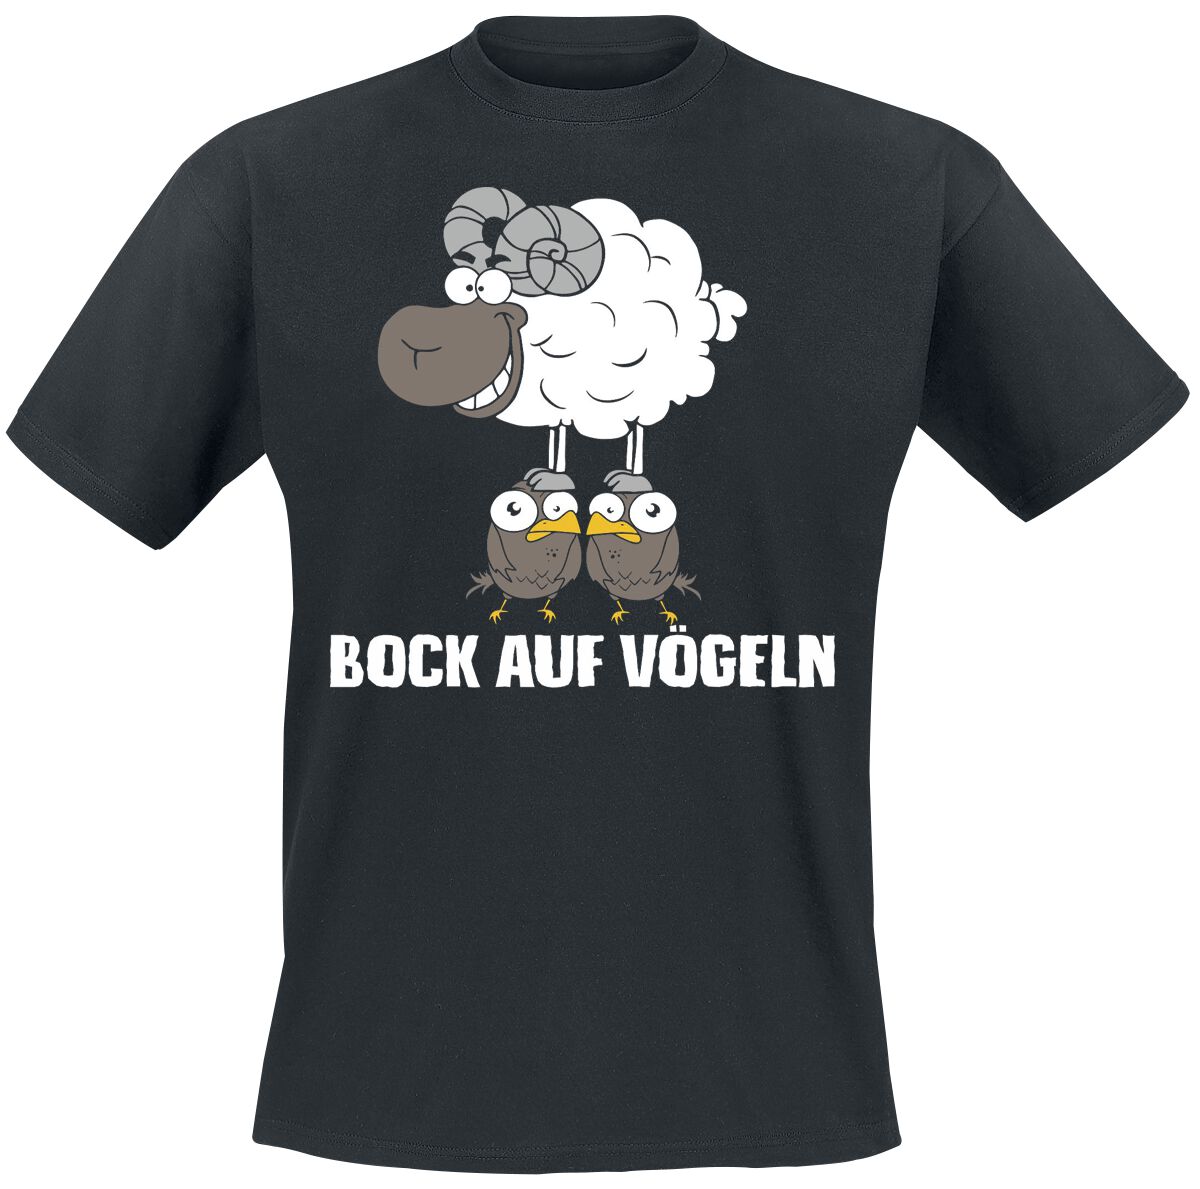 Tierisch T-Shirt - Bock auf Vögeln - XL bis 4XL - für Männer - Größe 3XL - schwarz